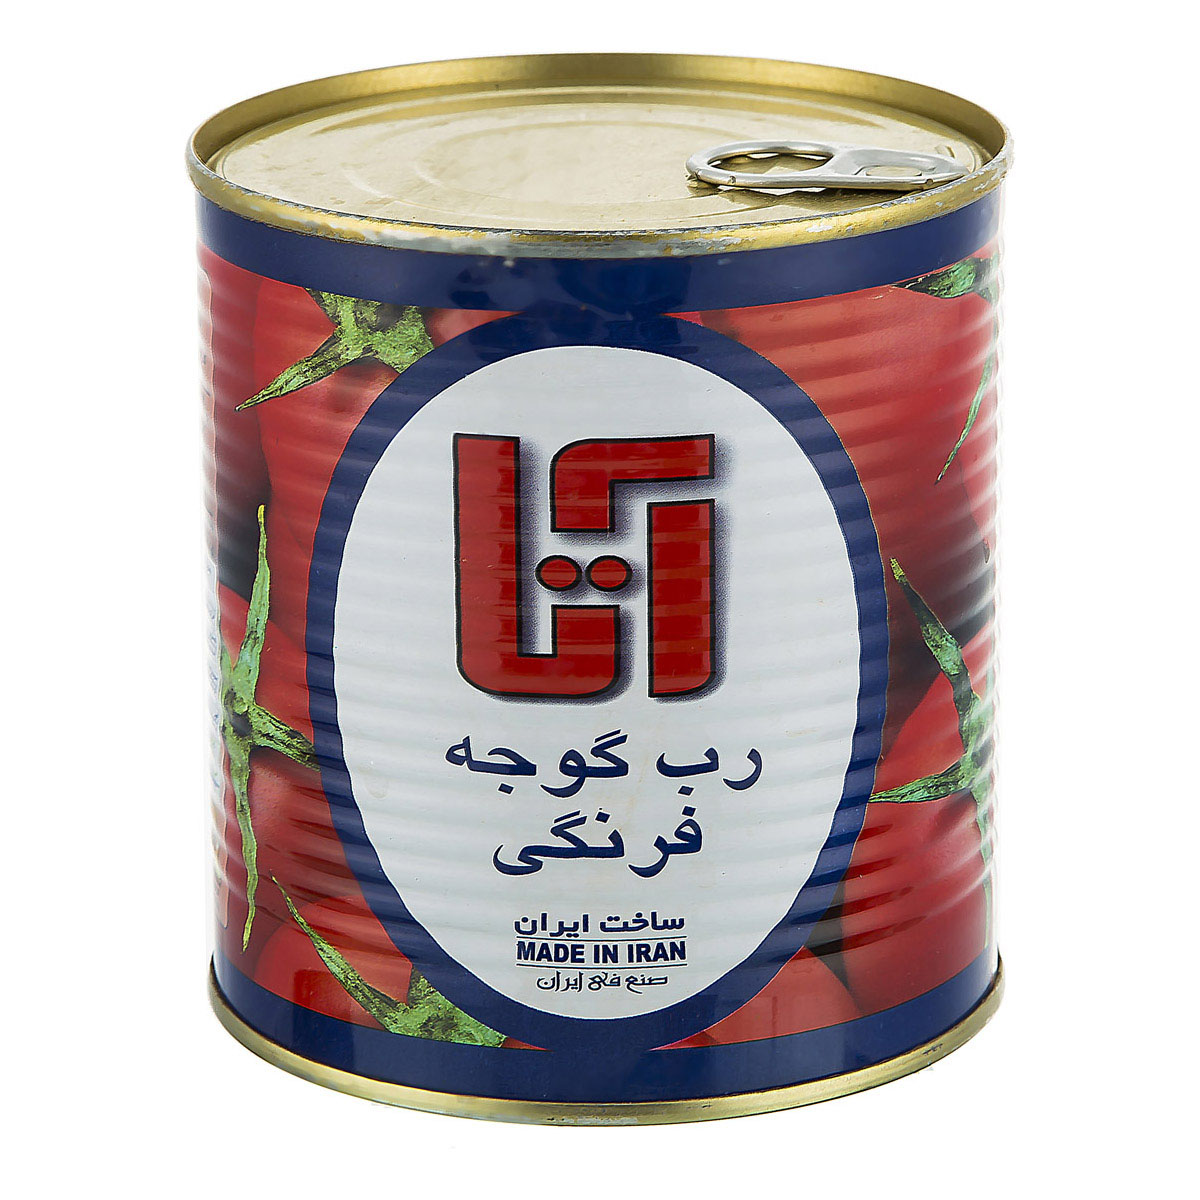 بازار خرید رب گوجه آتا مرغوب ایرانی